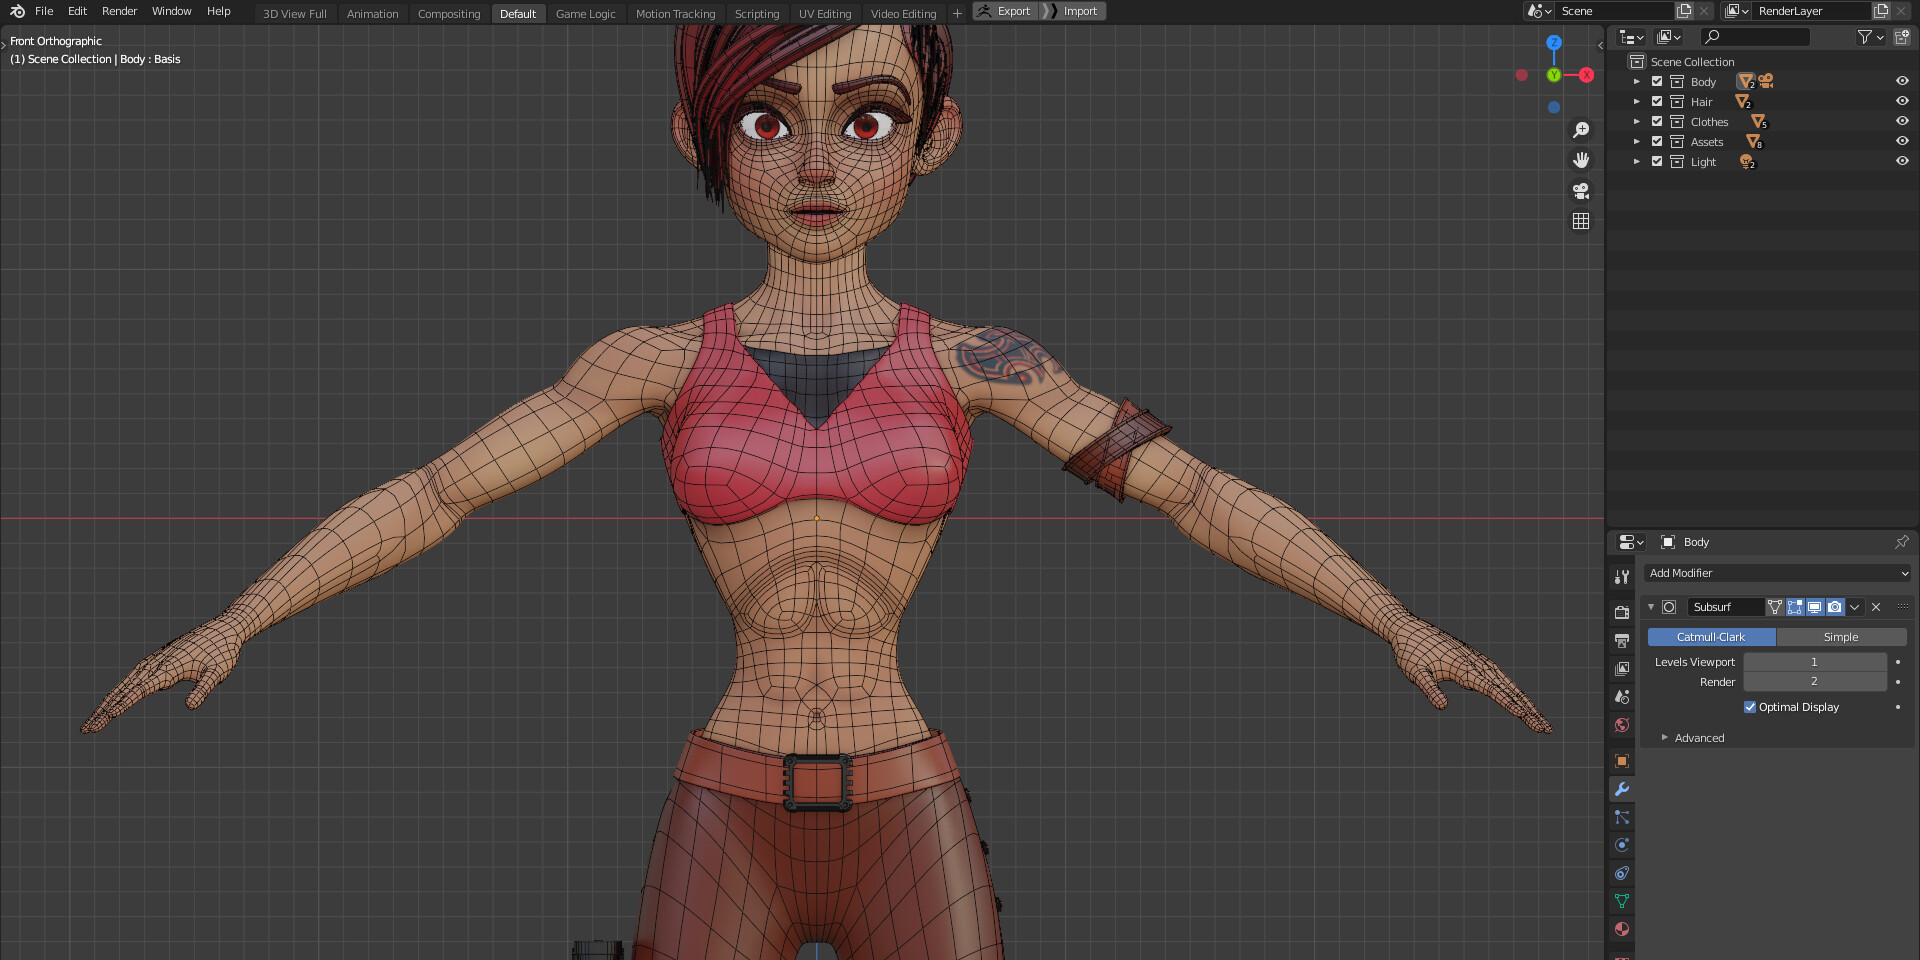 ArtStation - Stylized Character Girl - Rinna - Blender 3D Model